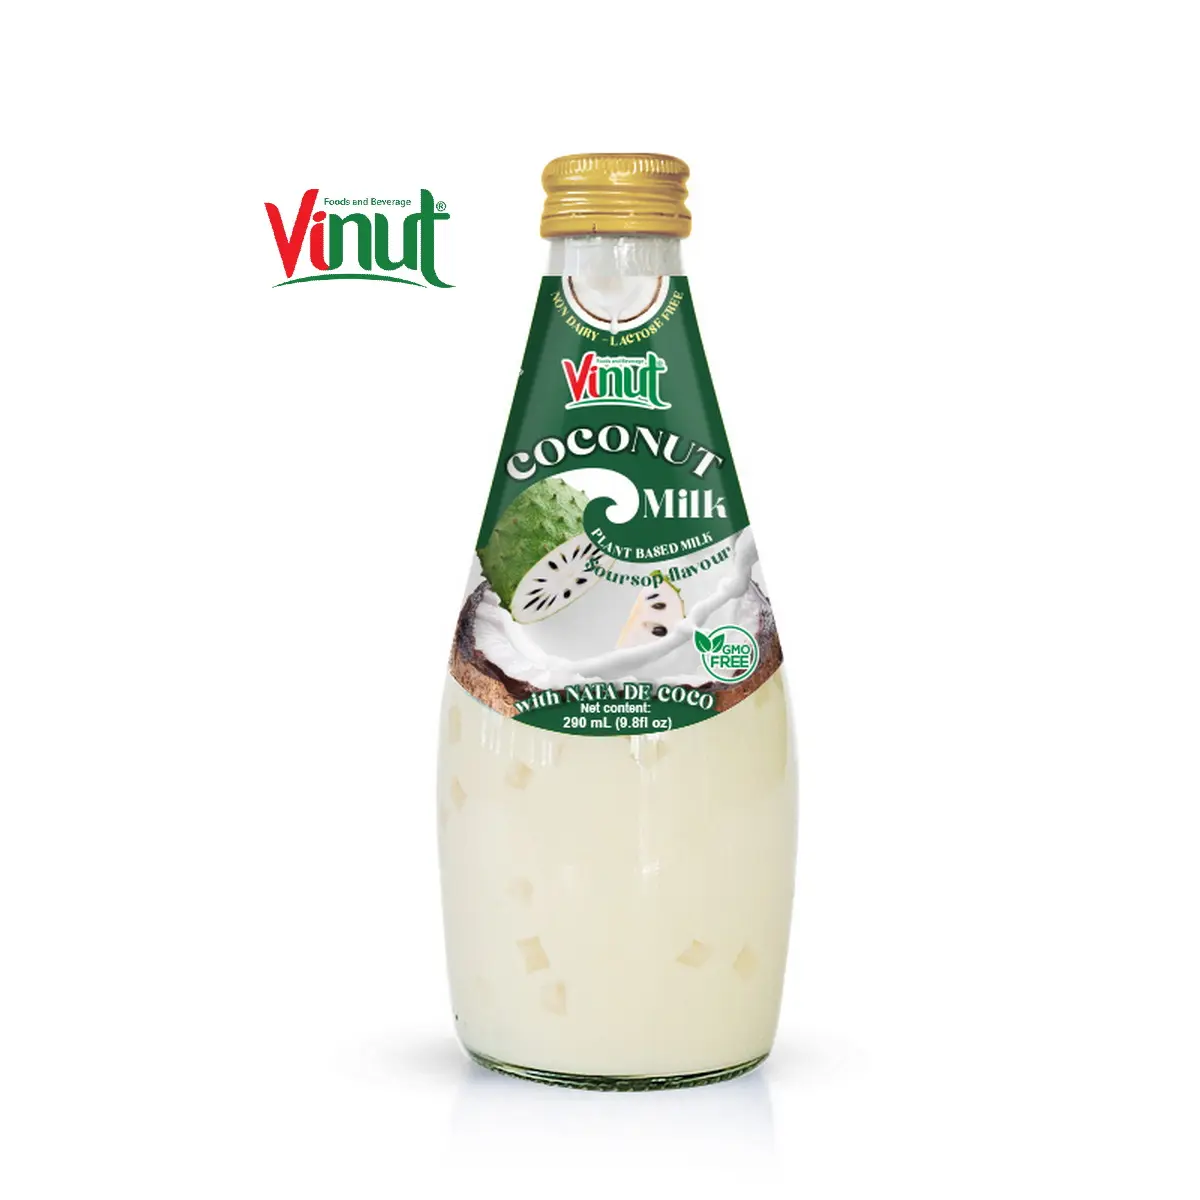 9.8 floz Vinut Bottle latte di cocco Soursop con Nata De Coco distributore di bevande da 330ml latte vegano di marca propria